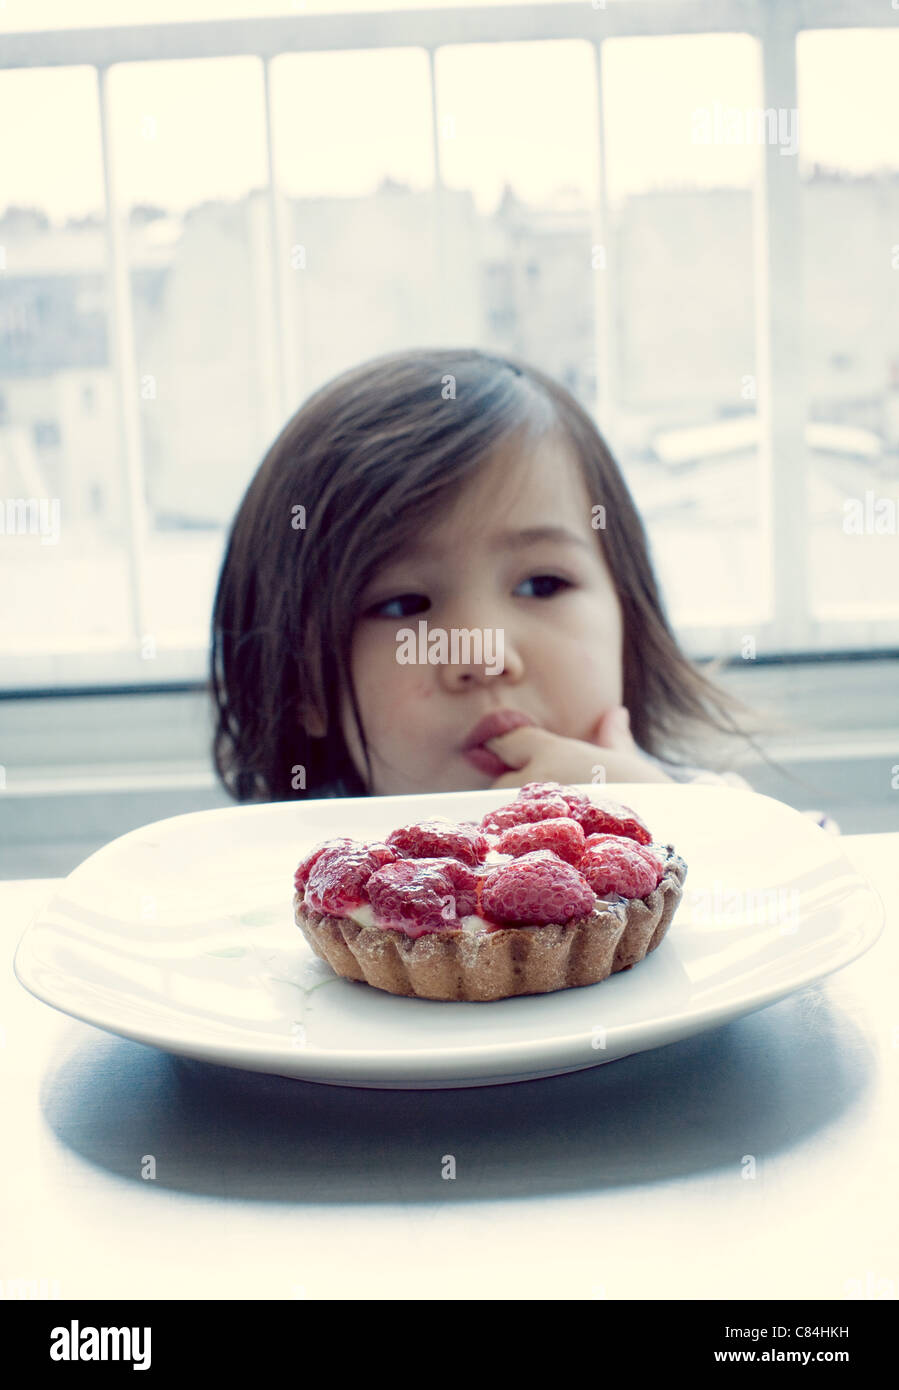 Little girl licking finger, raspberry tart in front Stock Photo